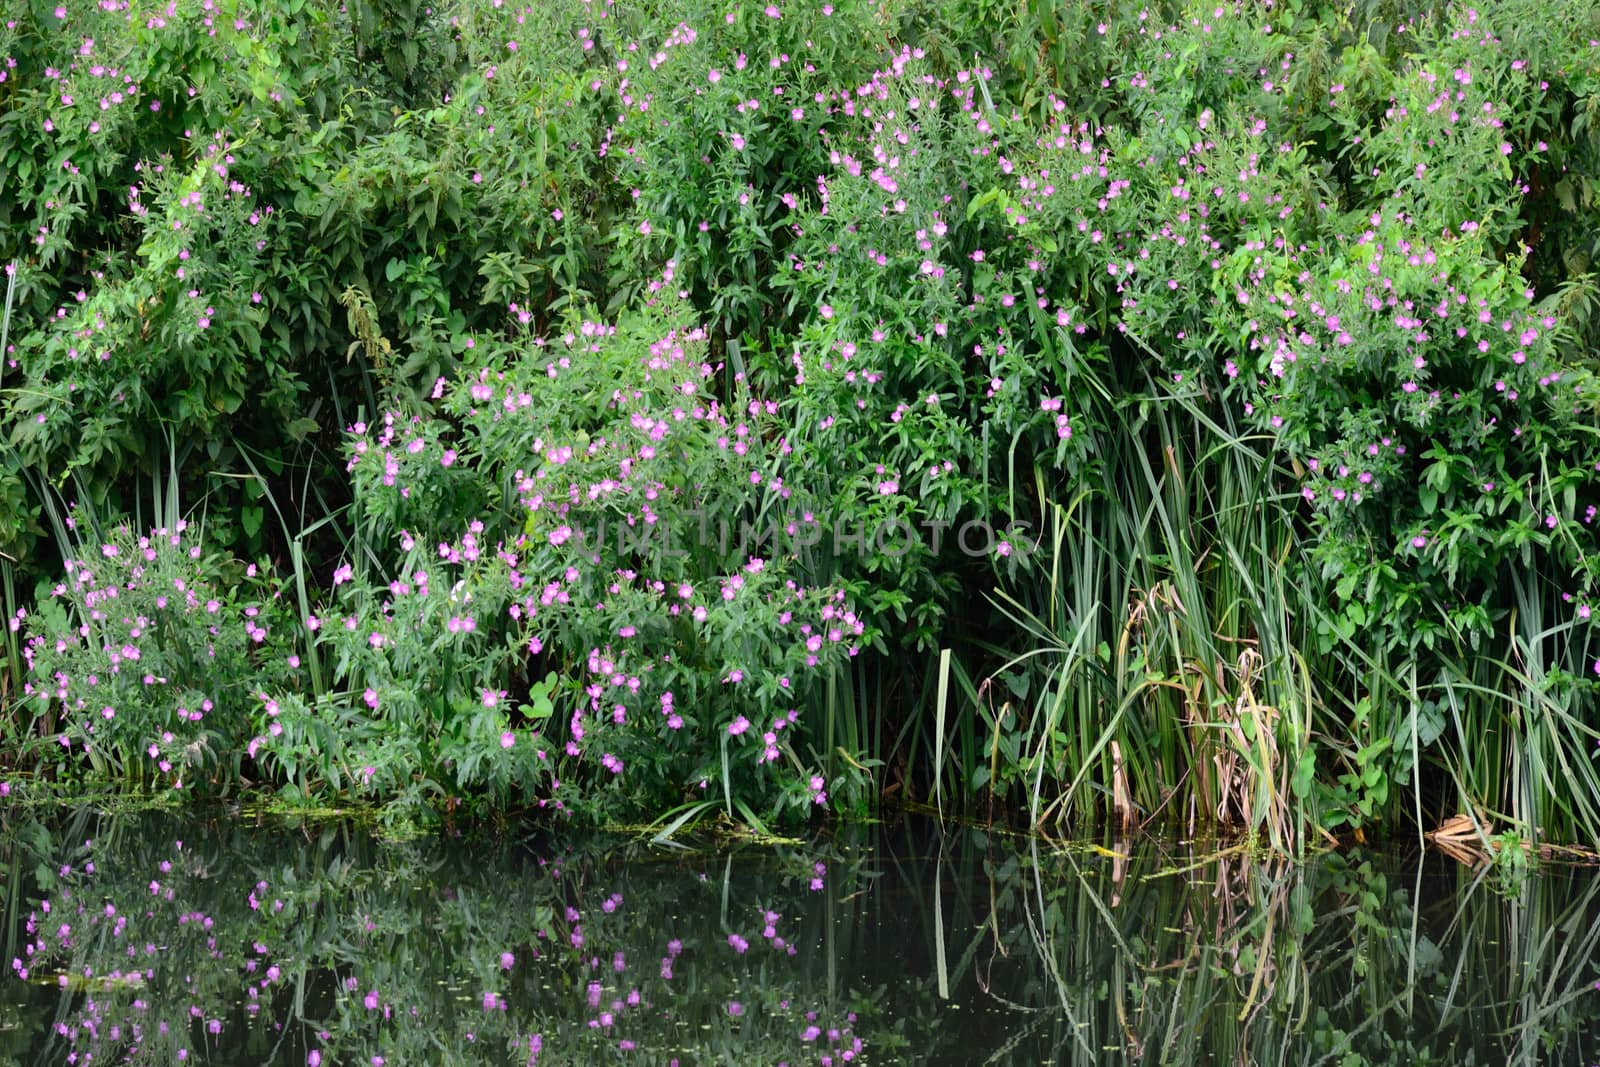 Purple riverside flowers